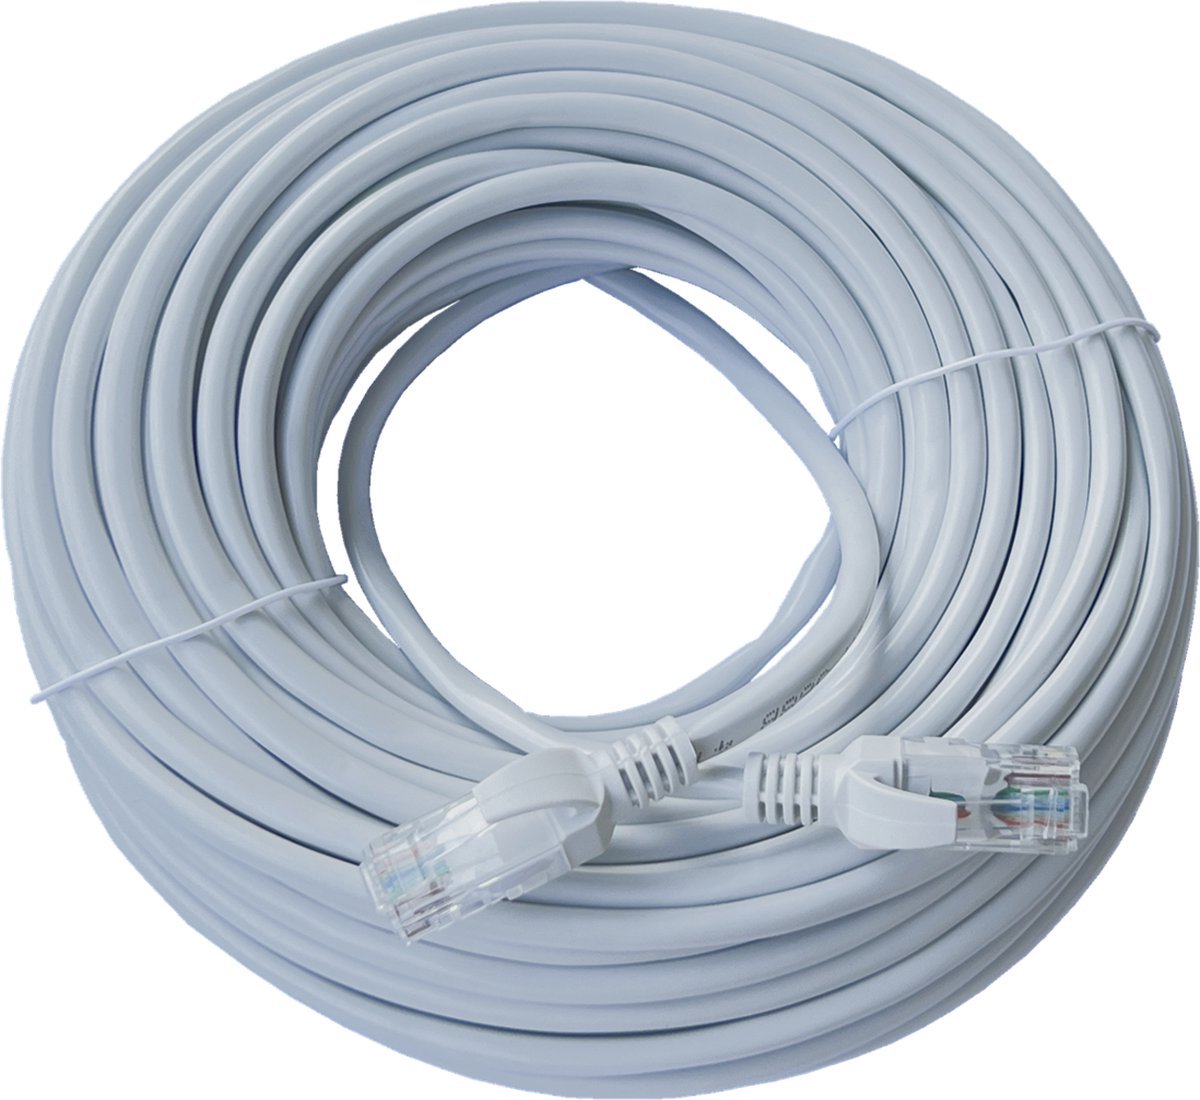 ValeDelucs Internetkabel 20 meter - CAT6 UTP Ethernet kabel RJ45 - Patchkabel LAN Cable Netwerkkabel - Grijs - ValeDelucs